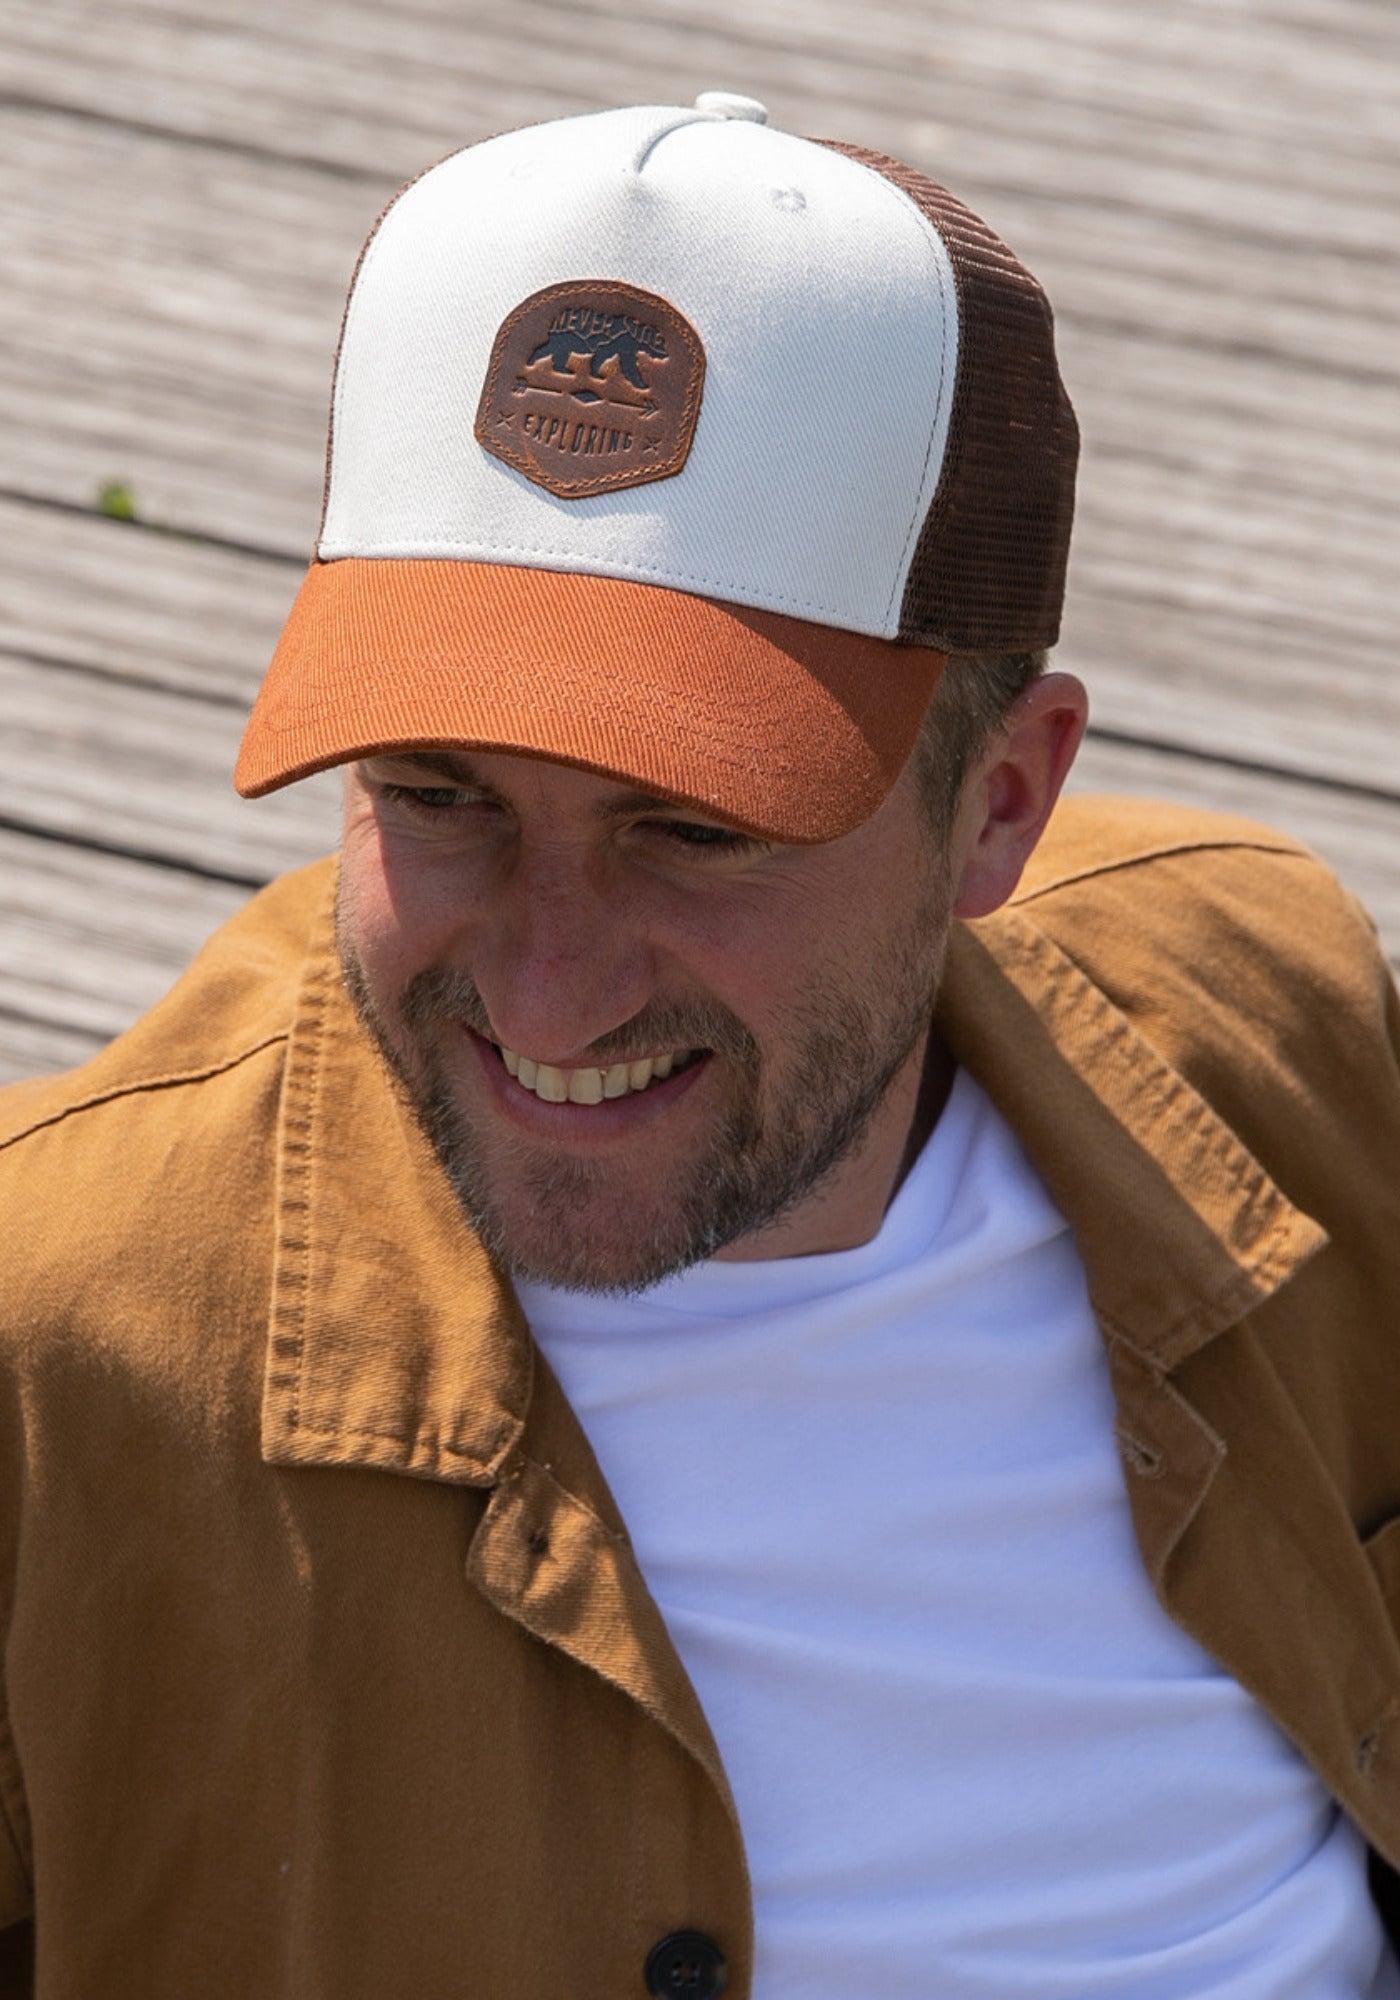 L'homme porte la casquette Trucker Exploring blanche de chez Alaskan Maker